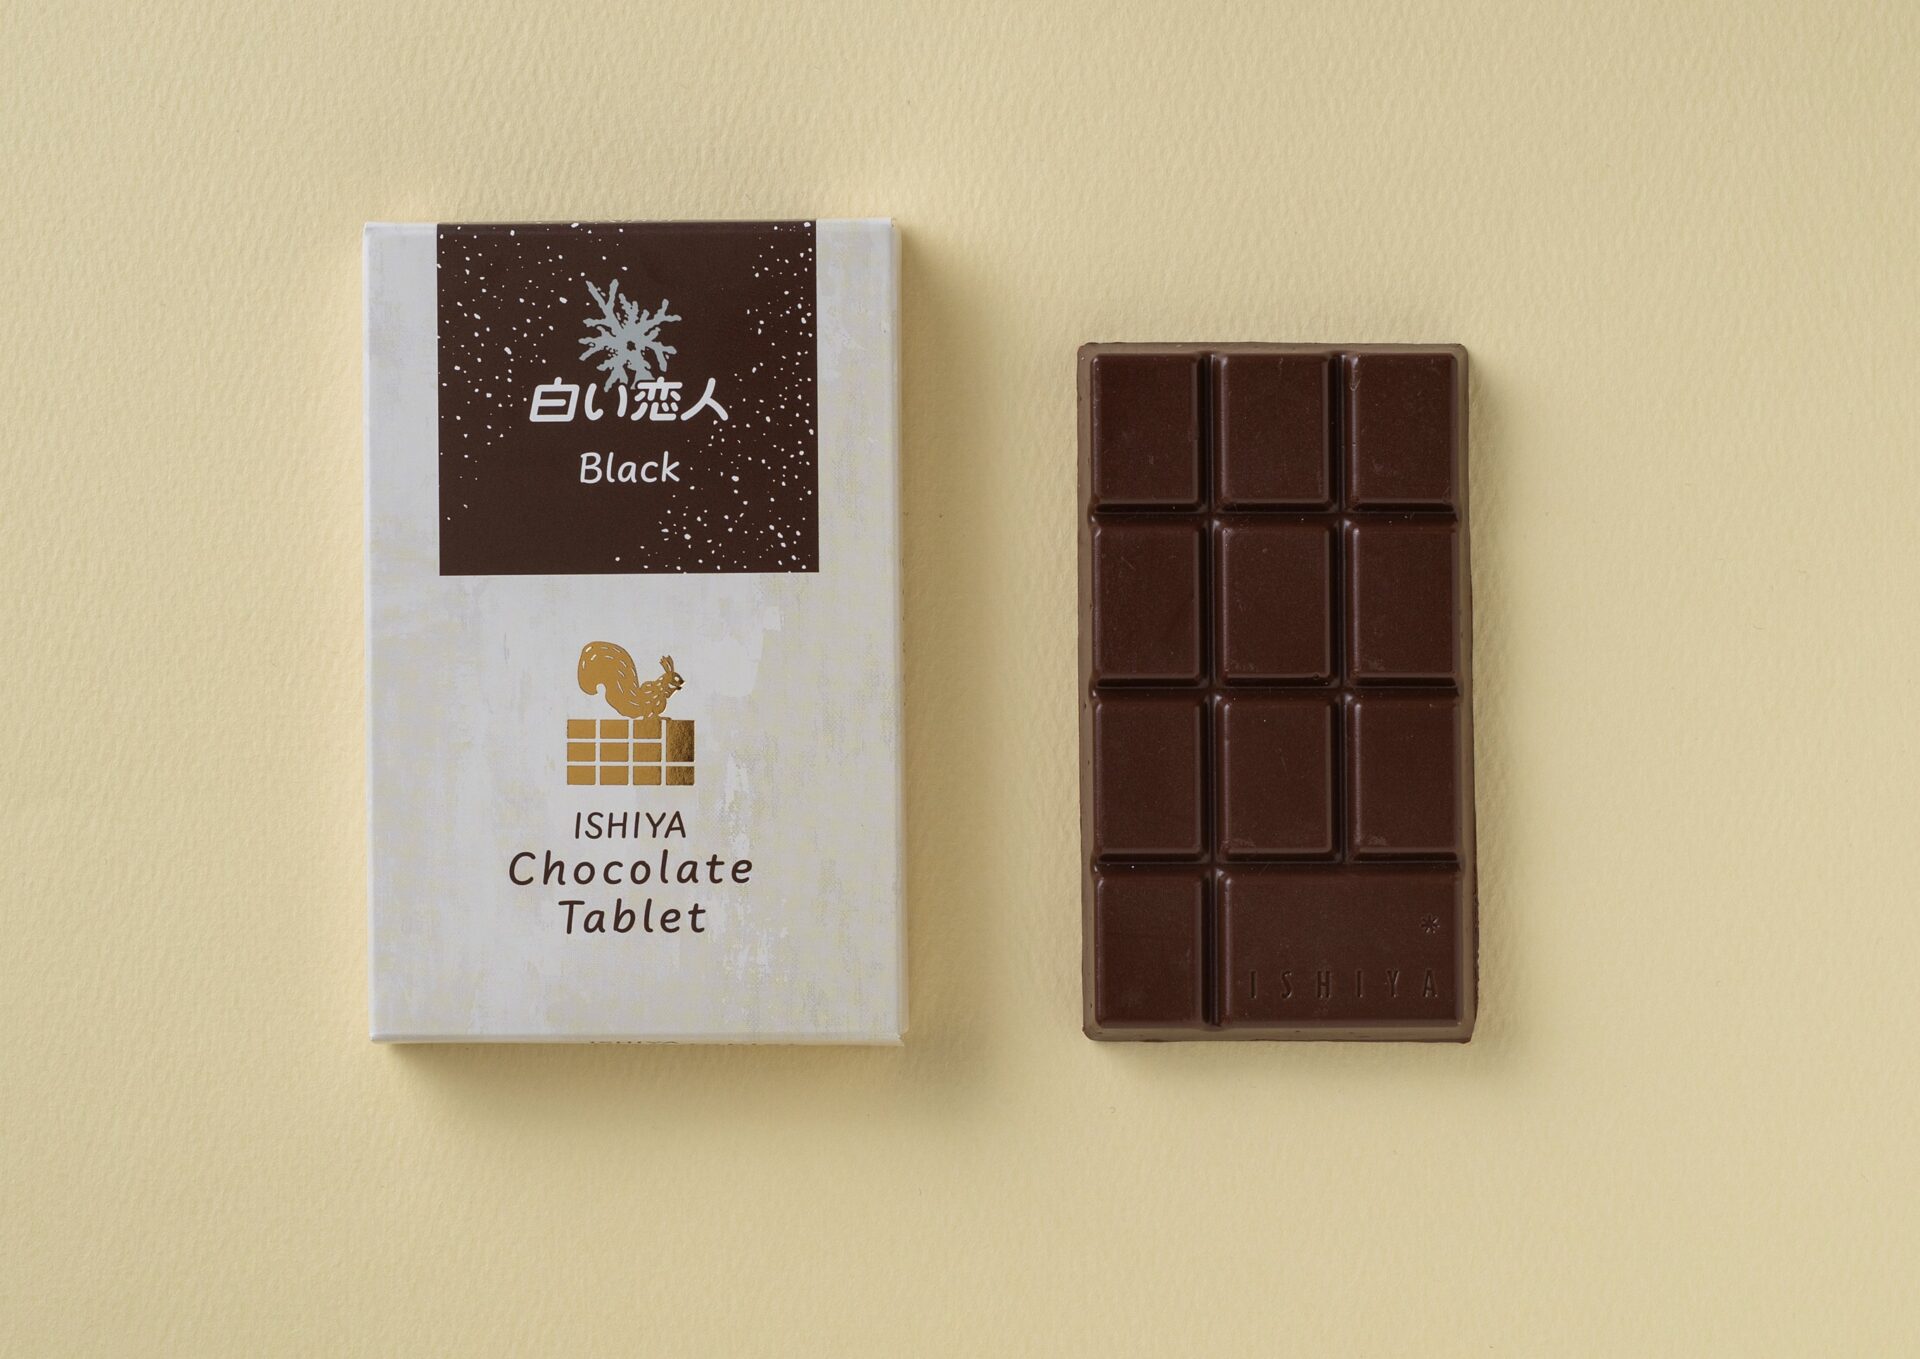 「チョコレートタブレット（白い恋人ブラック）」の白をベースにし、エゾリスのシルエットが描かれたパッケージの箱となかのチョコレートの写真。こちらはミルクチョコレートで、手でわれるように凹凸がついています